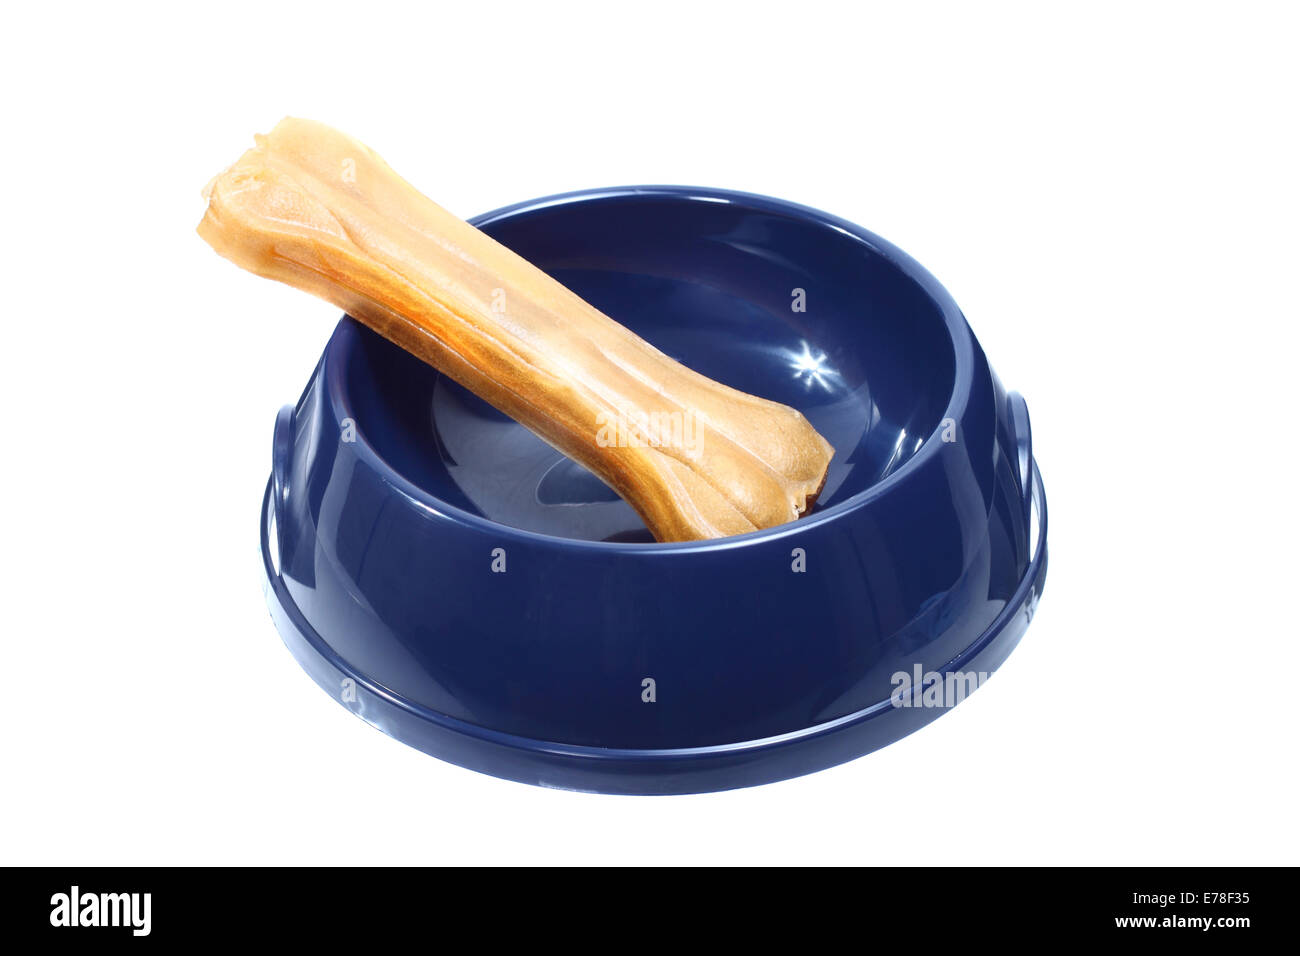 Dog bone in blue plastic bowl isolated on white background Stock Photo